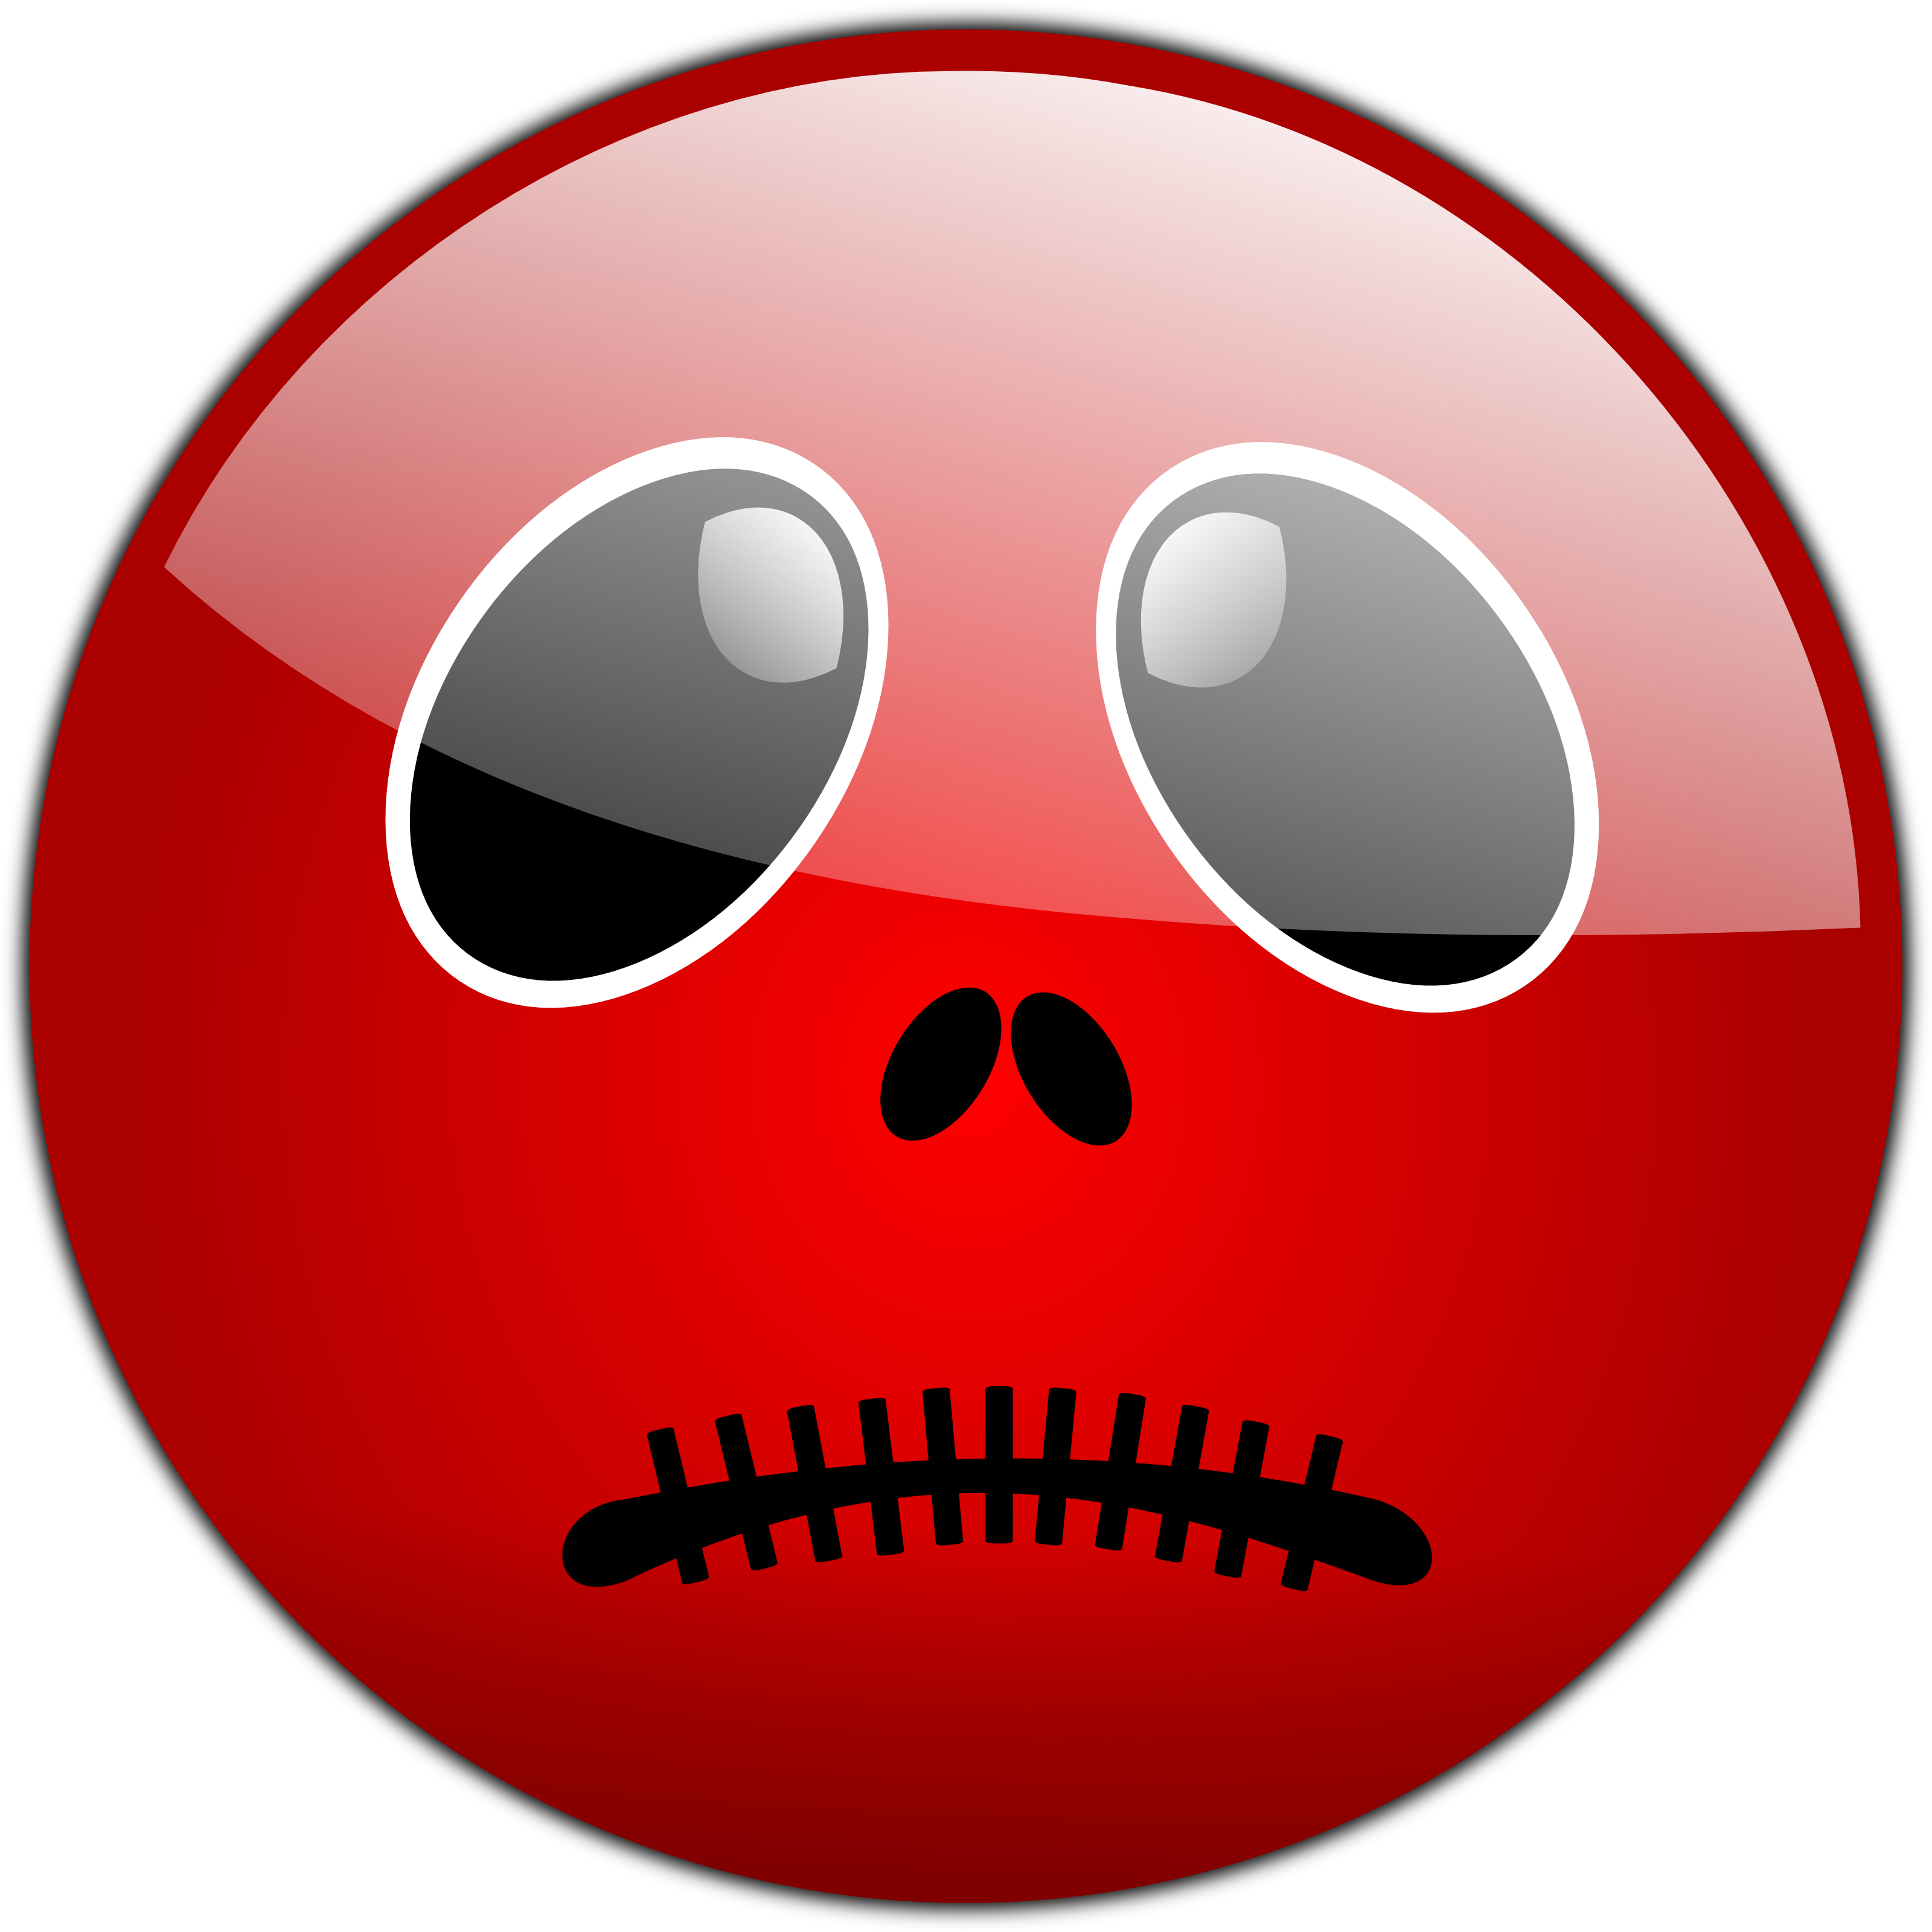 Merah marah menangis emoji PNG unduh Gratis